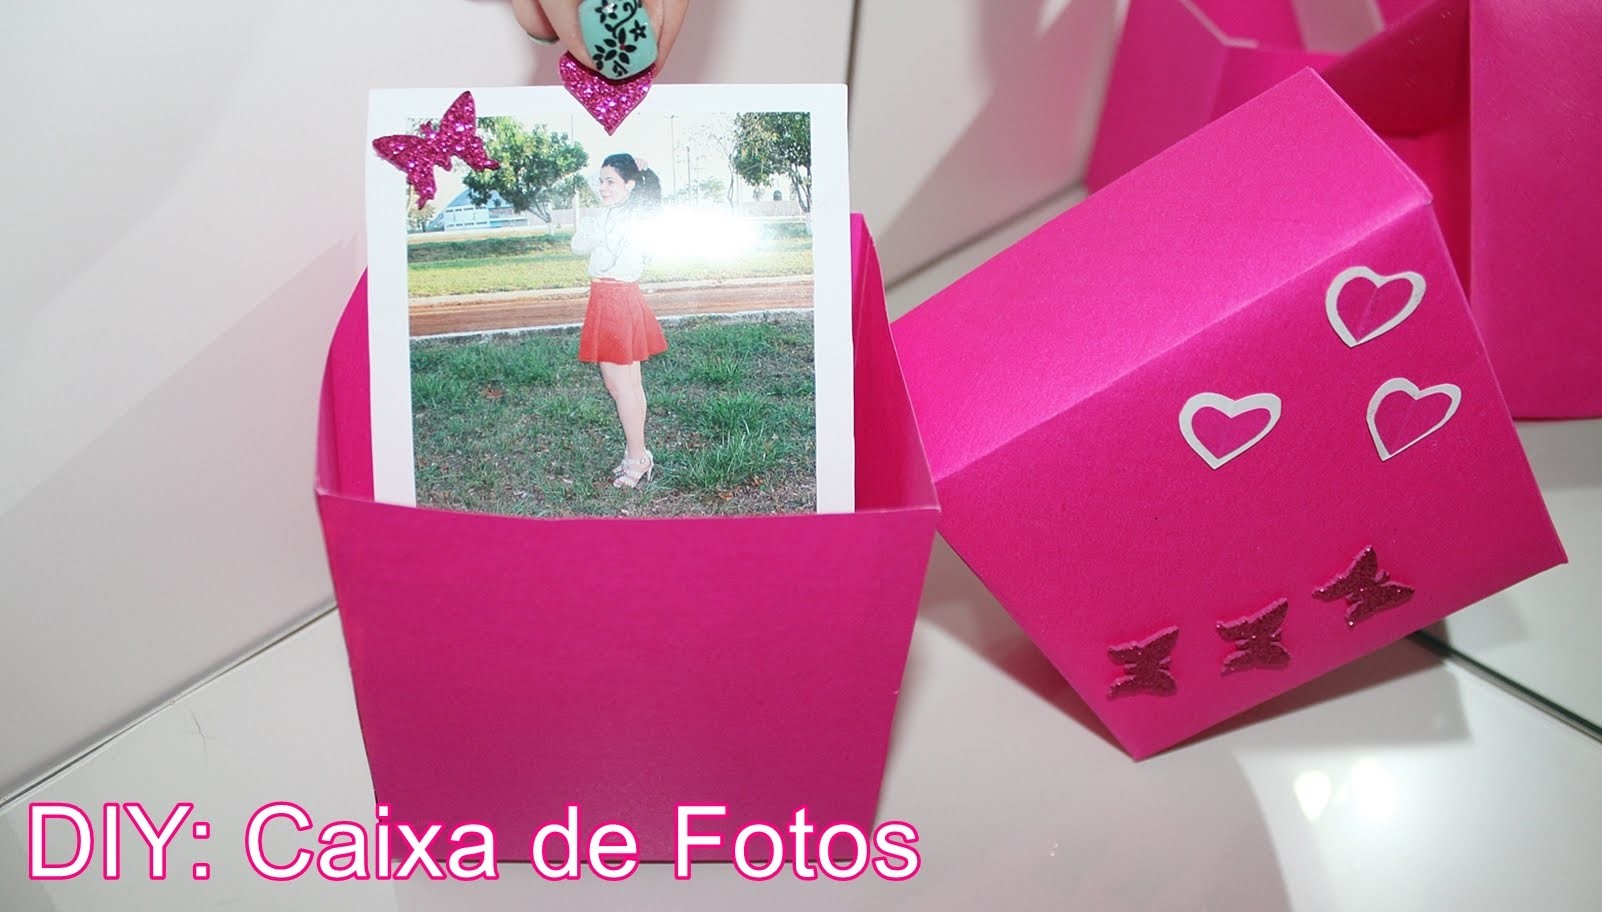 DIY: Caixa de Fotos - Presente para a mãe, pai, namorado, amigos, etc